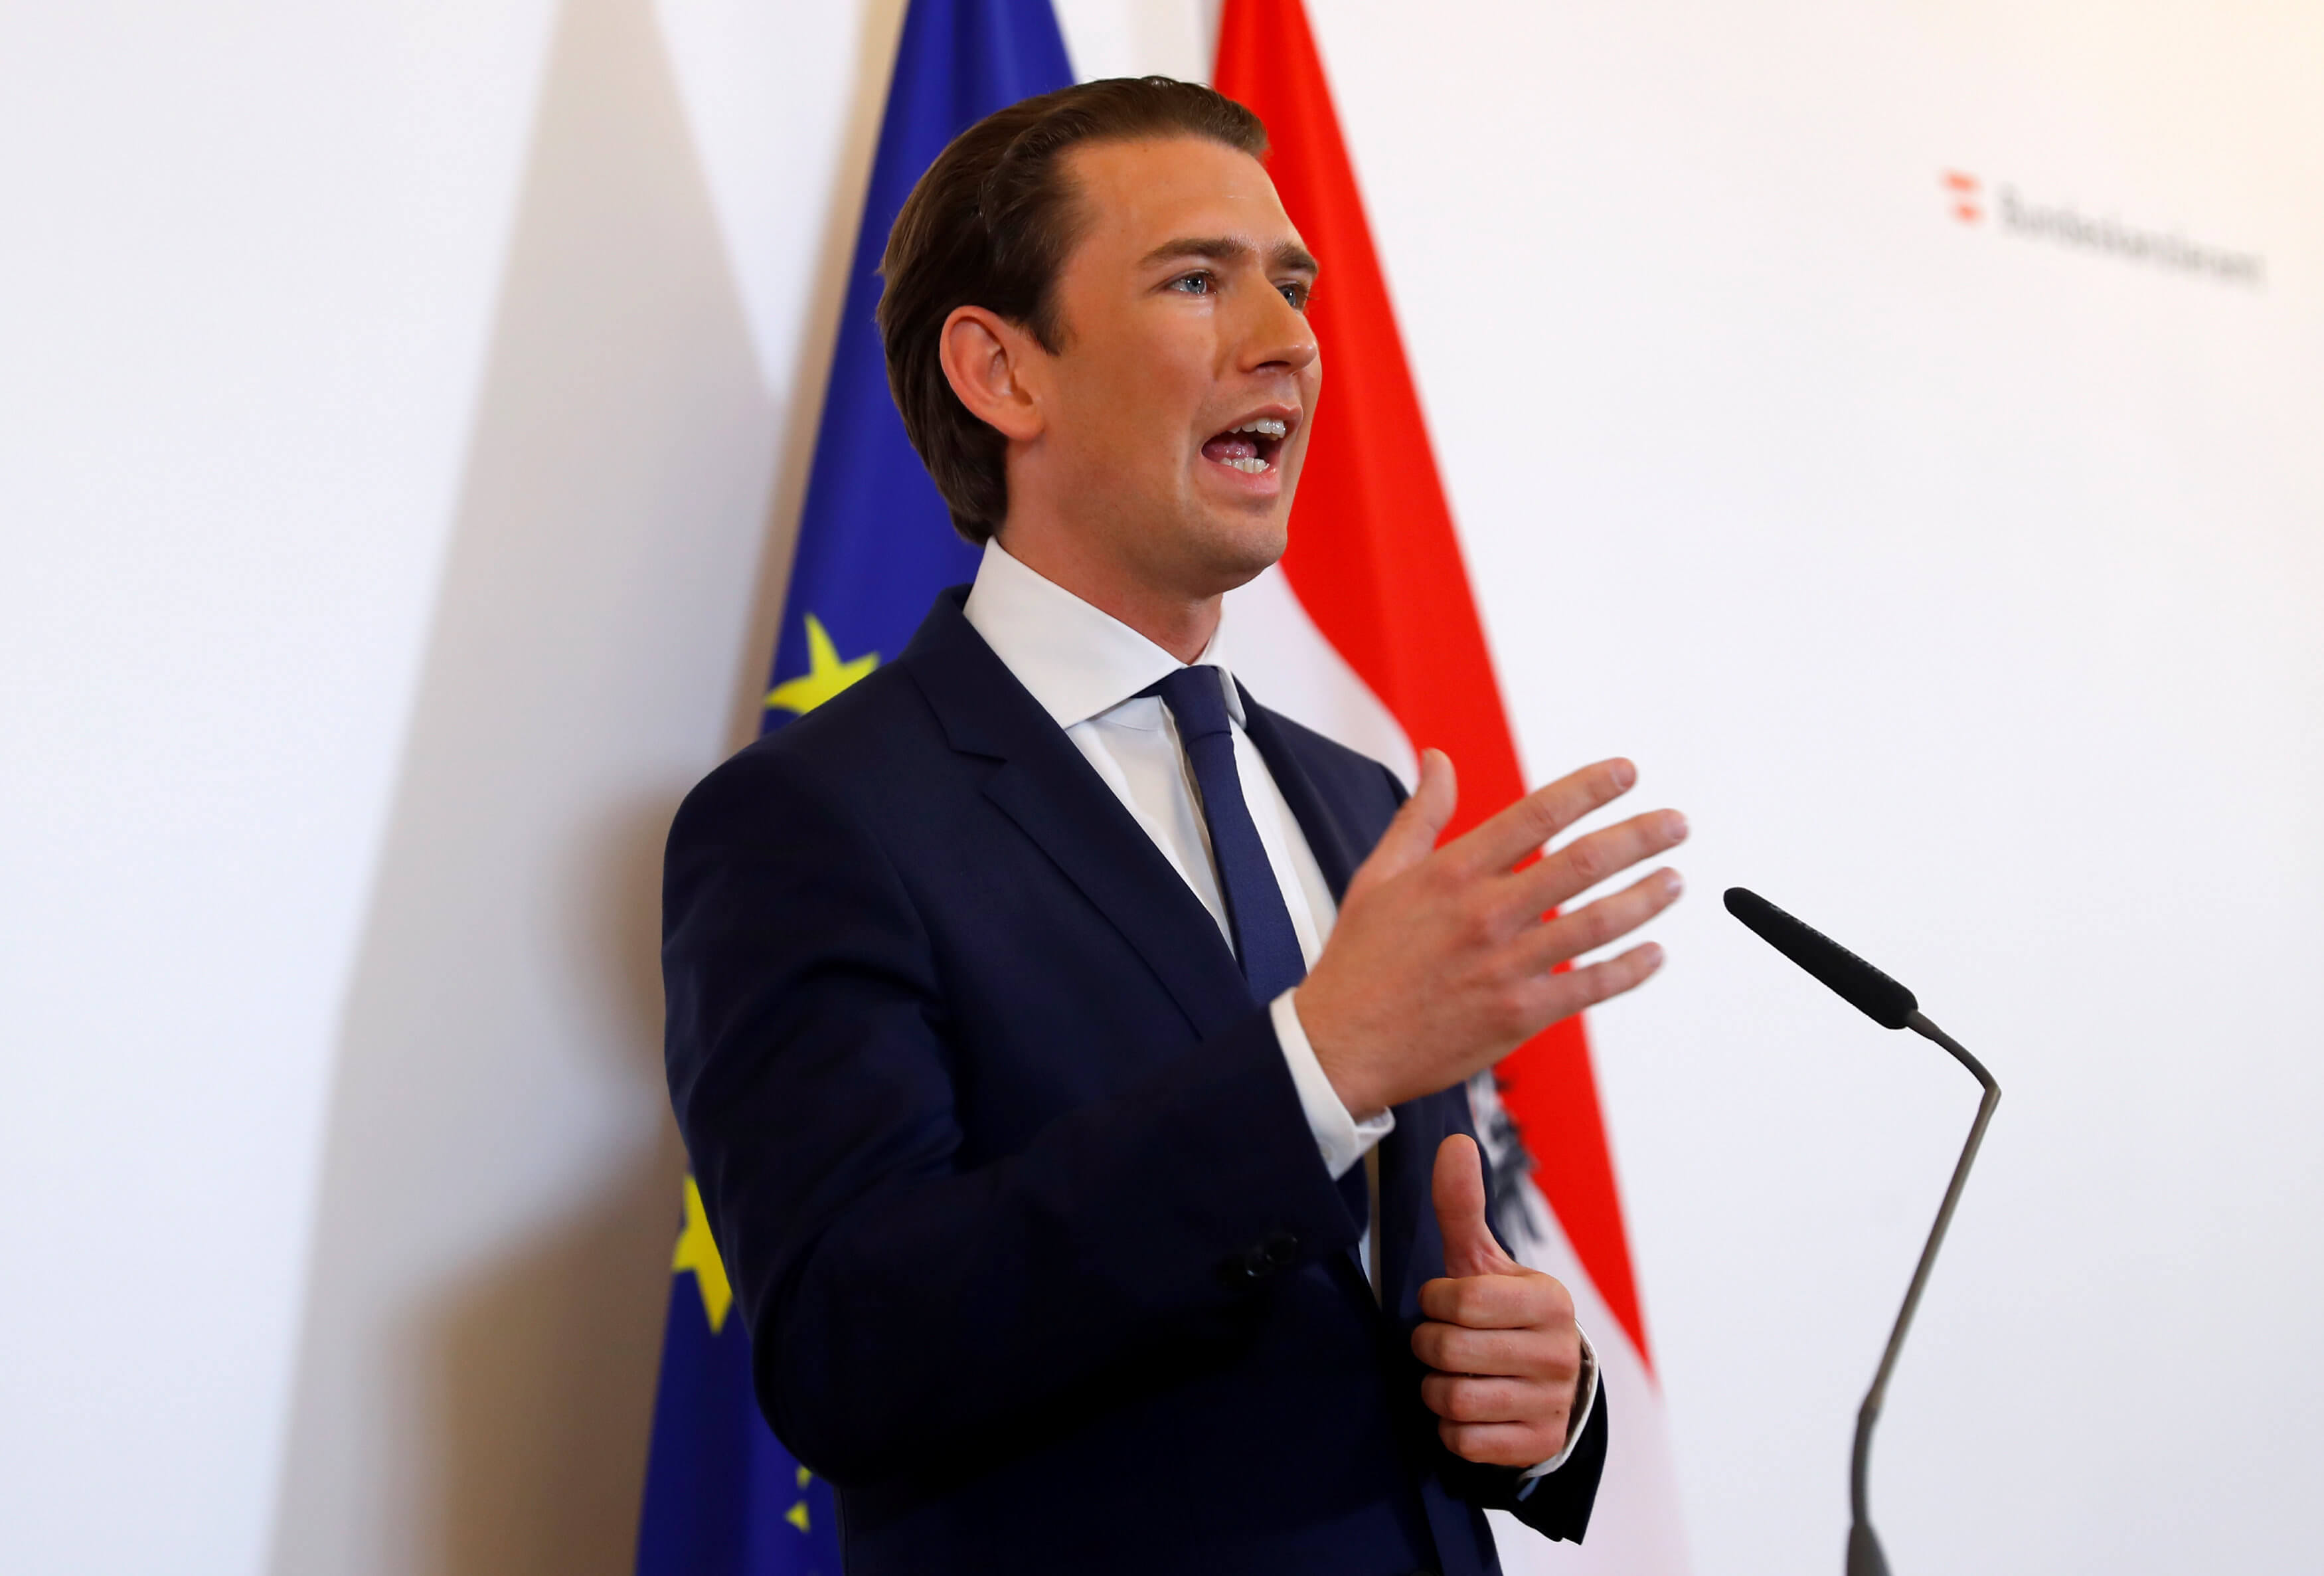 Σκάνδαλο στην Αυστρία: Διώχνει τους υπουργούς των Ελευθέρων ο Κουρτς και τους αντικαθιστά με τεχνοκράτες